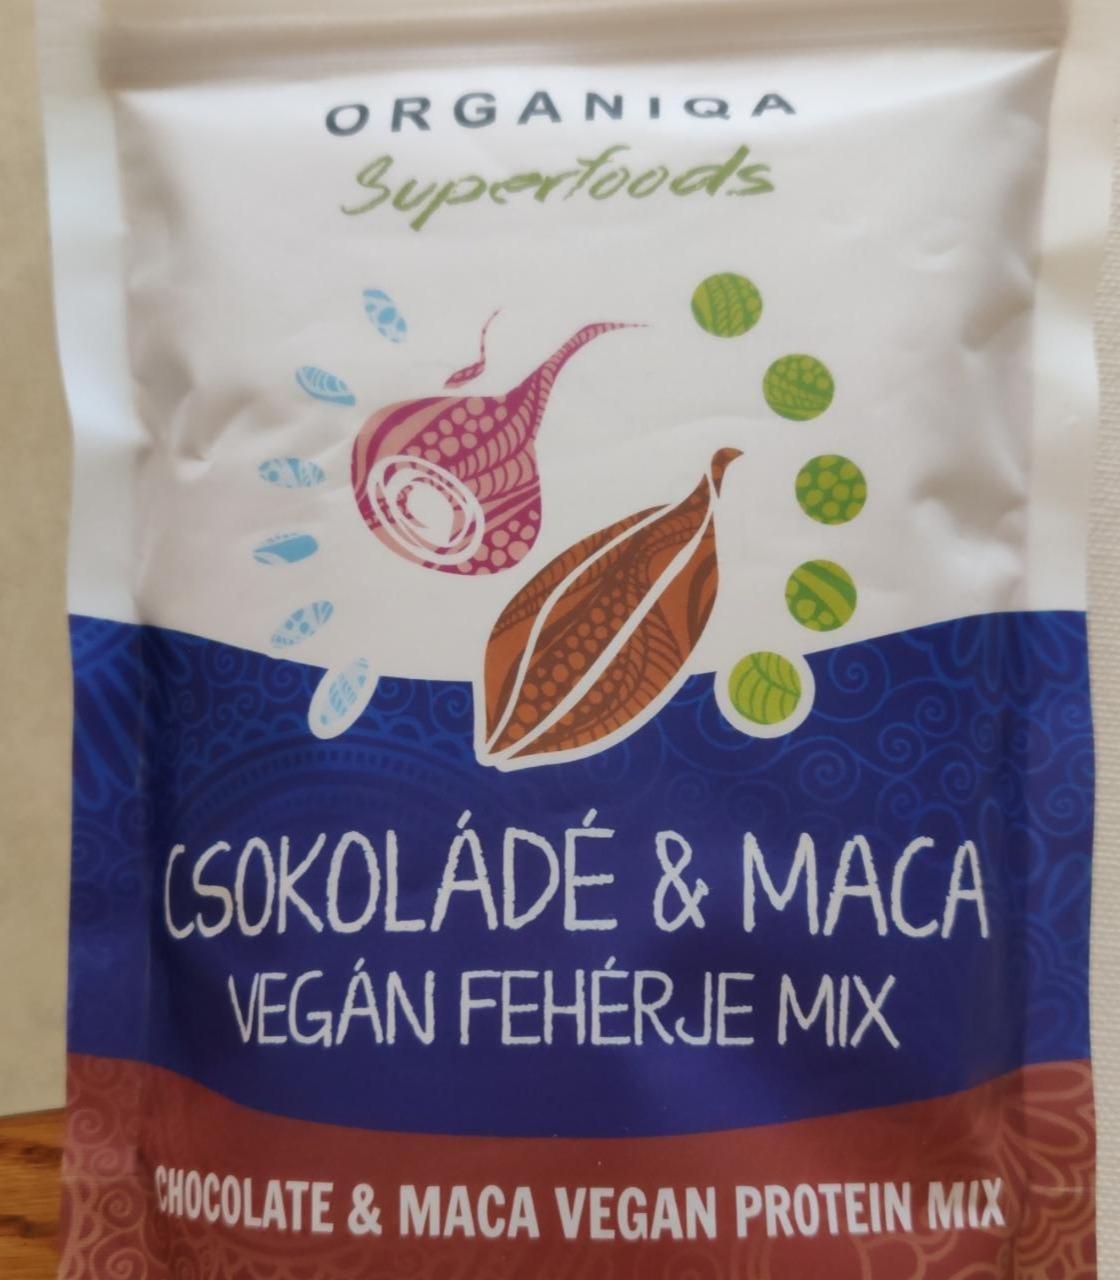 Képek - Vegán fehérje mix Csokoláde & maca Organiqa